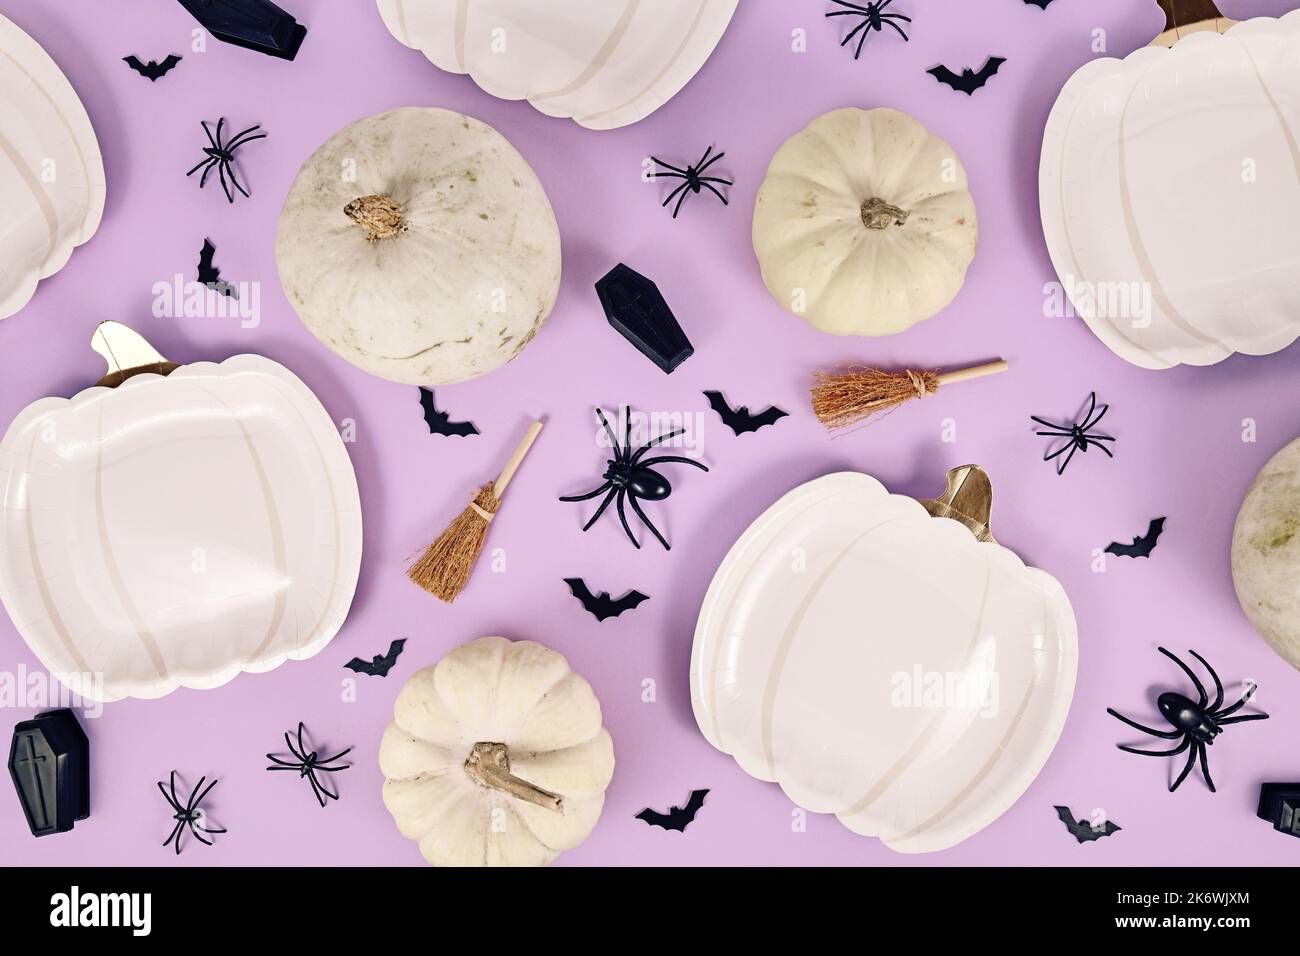 Festa di Halloween piatto con piatti a forma di zucca, zucche, scopa strega, ragni e bare su sfondo viola Foto Stock